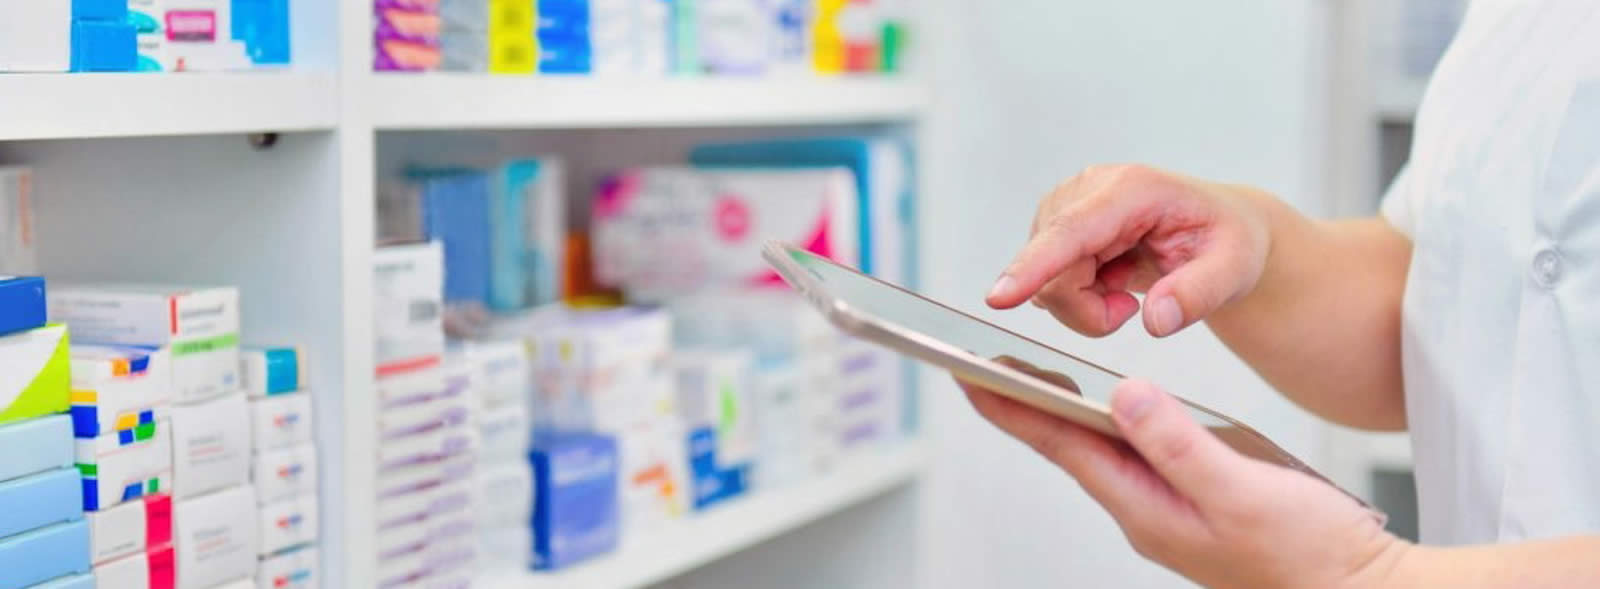 Shelves of medicines, hands holding tablet